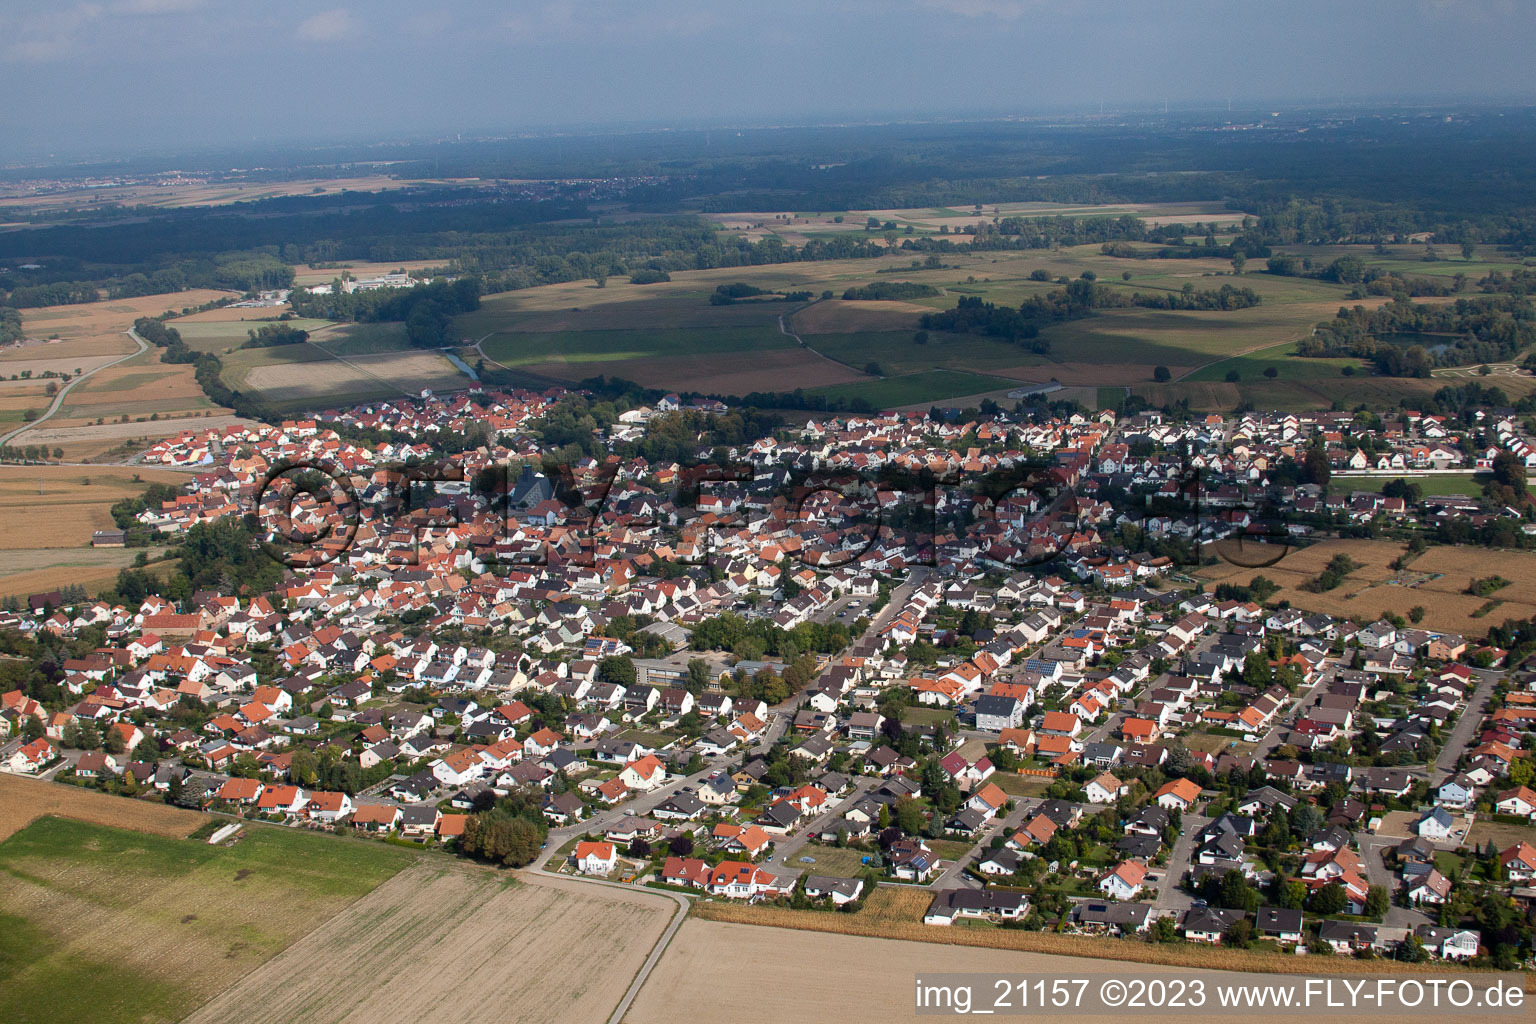 Leimersheim im Bundesland Rheinland-Pfalz, Deutschland vom Flugzeug aus